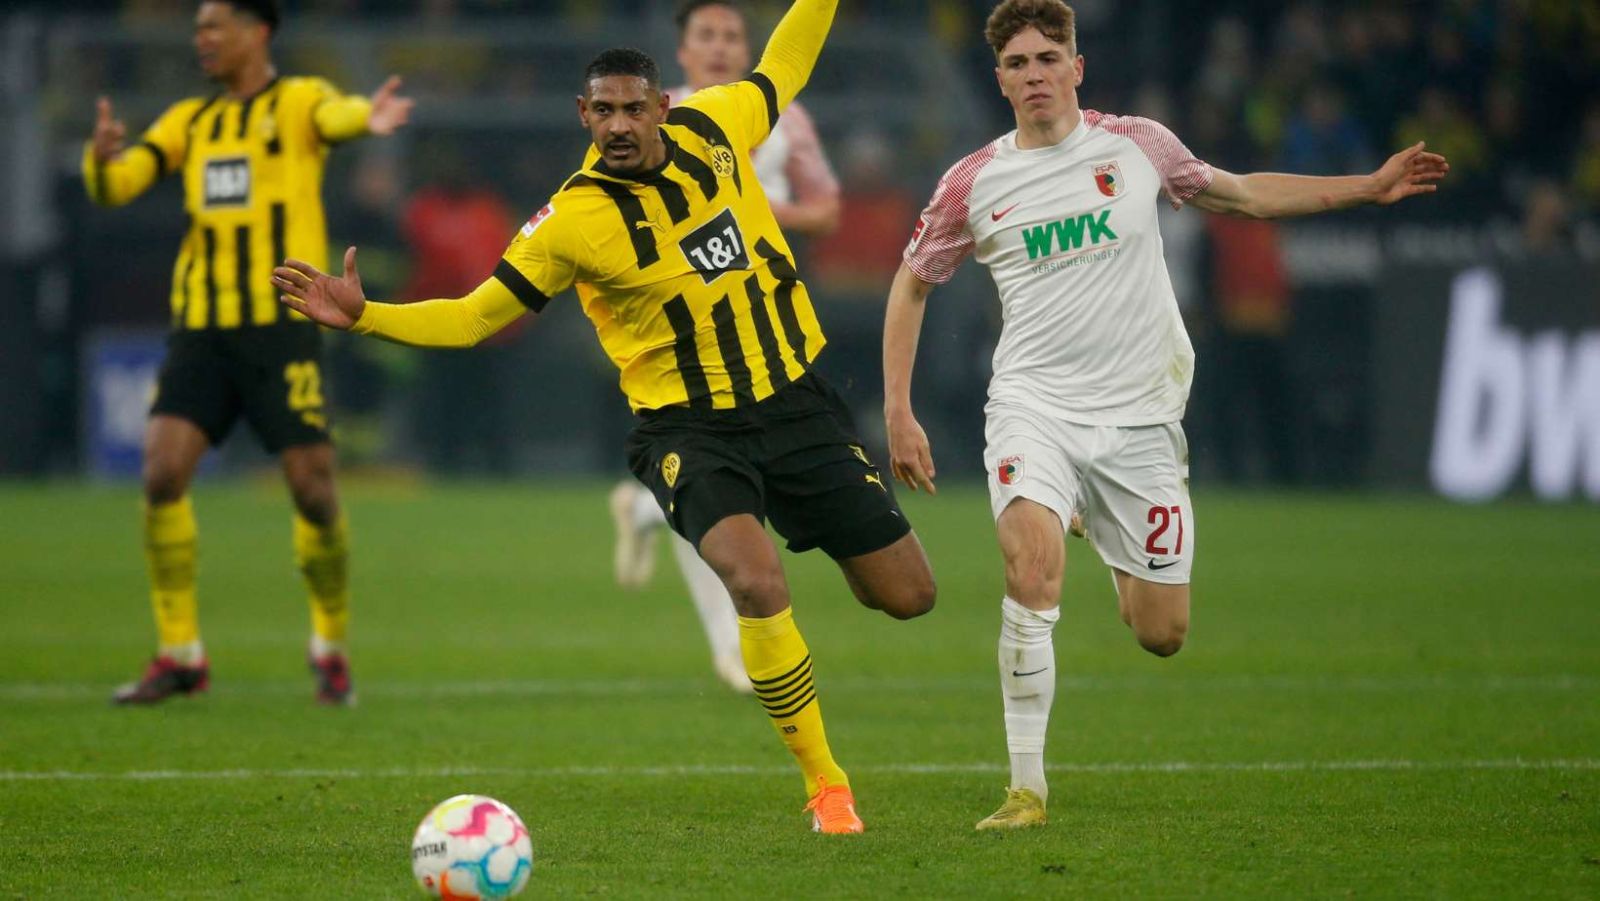 Pronostic Borussia Dortmund - Augsbourg : Analyse, compos probables et cotes du match